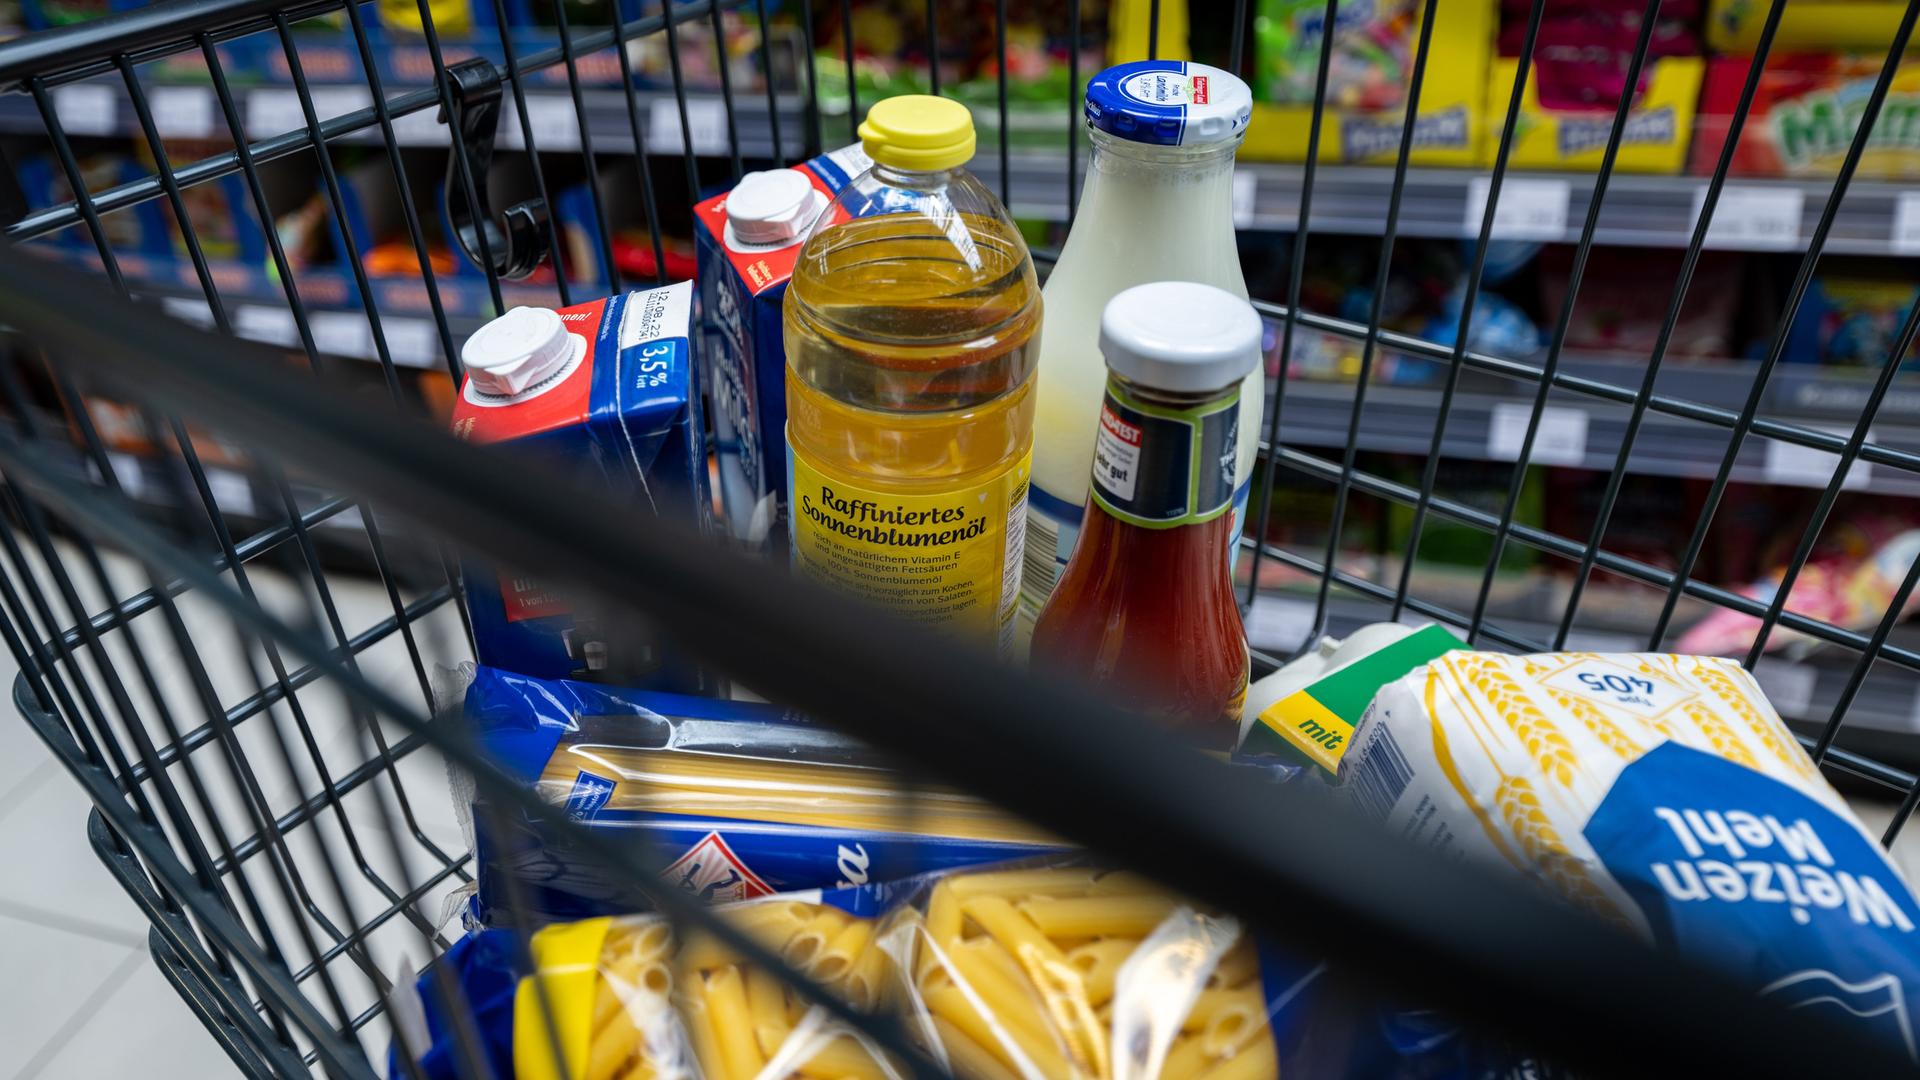 Lebensmittel liegen in einem Einkaufswagen in einem Supermarkt in Leipzig. Die Preise für Lebensmittel sind in den vergangenen Monaten bereits gestiegen und könnten noch weiter ansteigen .